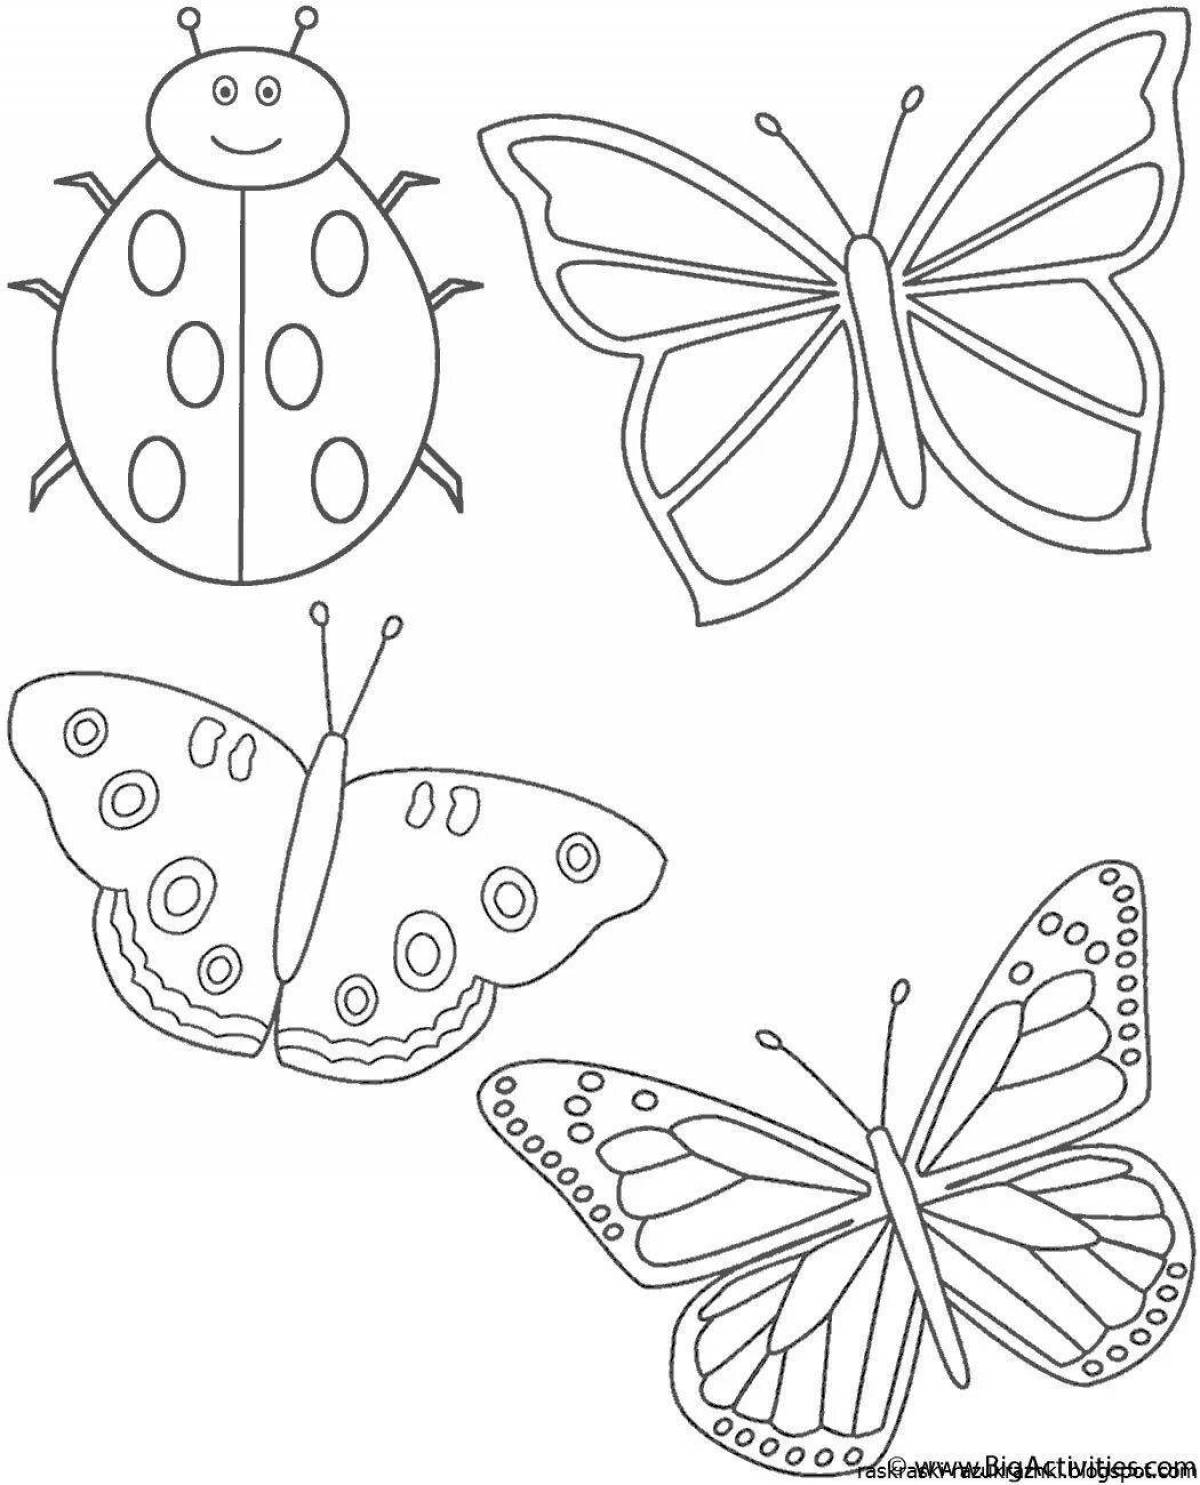 Раскраска на 6 листов. Рисунки для раскрашивания. Бабочка раскраска для детей. Раскраска для малы бабочка. Насекомые. Раскраска.